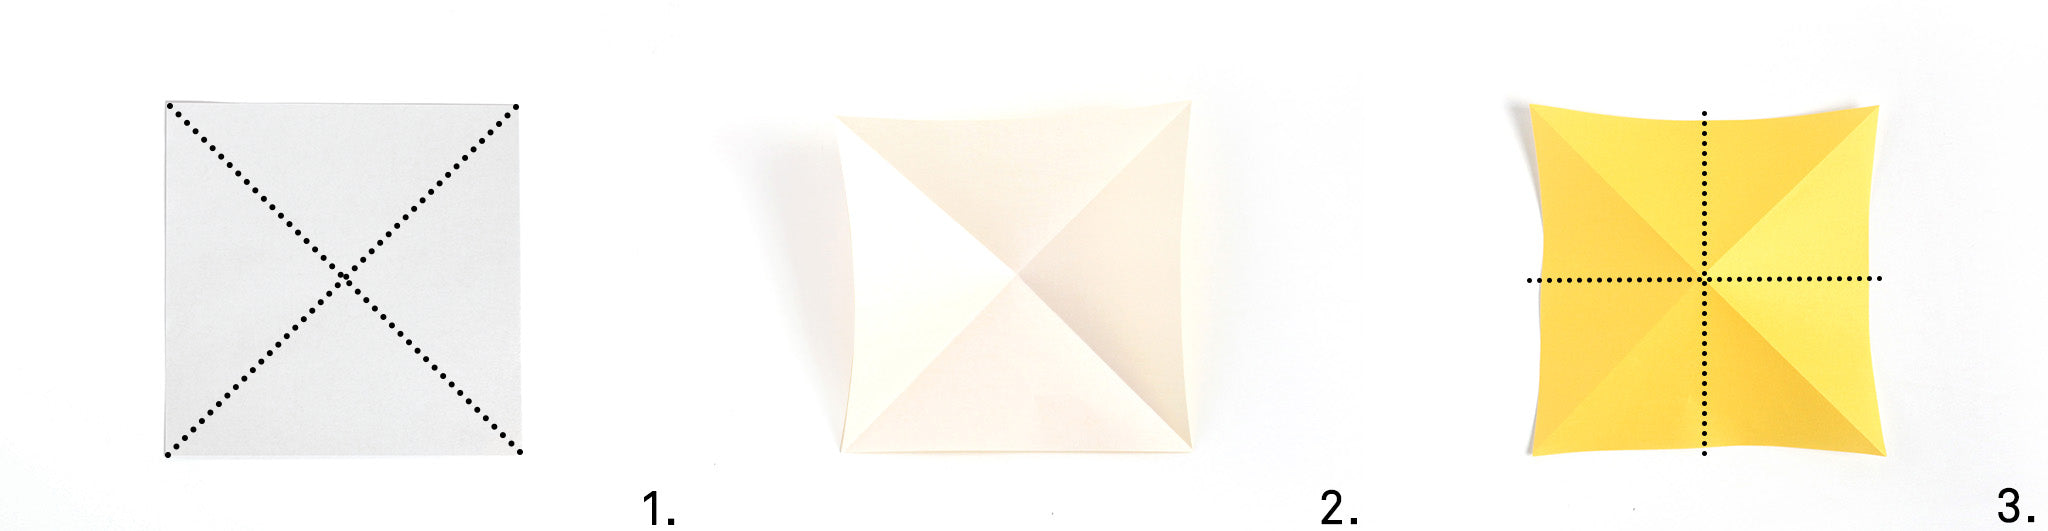 TUTO La Guirlande Lumineuse en Origami et Papiers Japonais – Adeline Klam